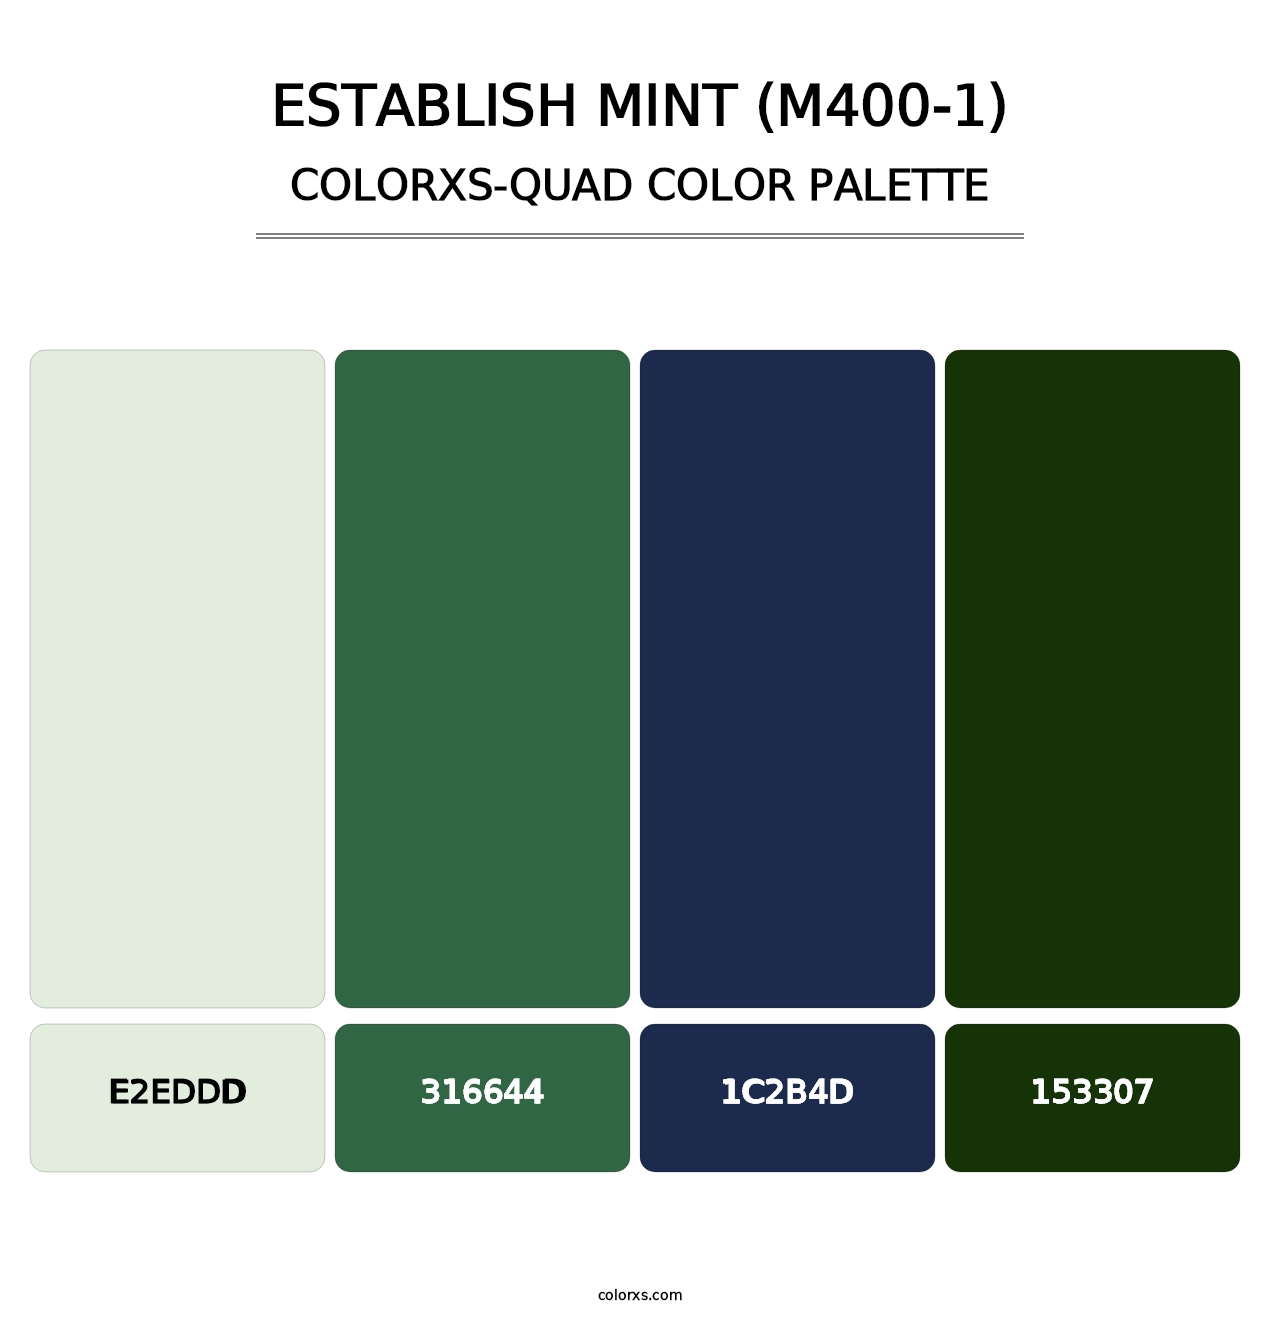 Establish Mint (M400-1) - Colorxs Quad Palette